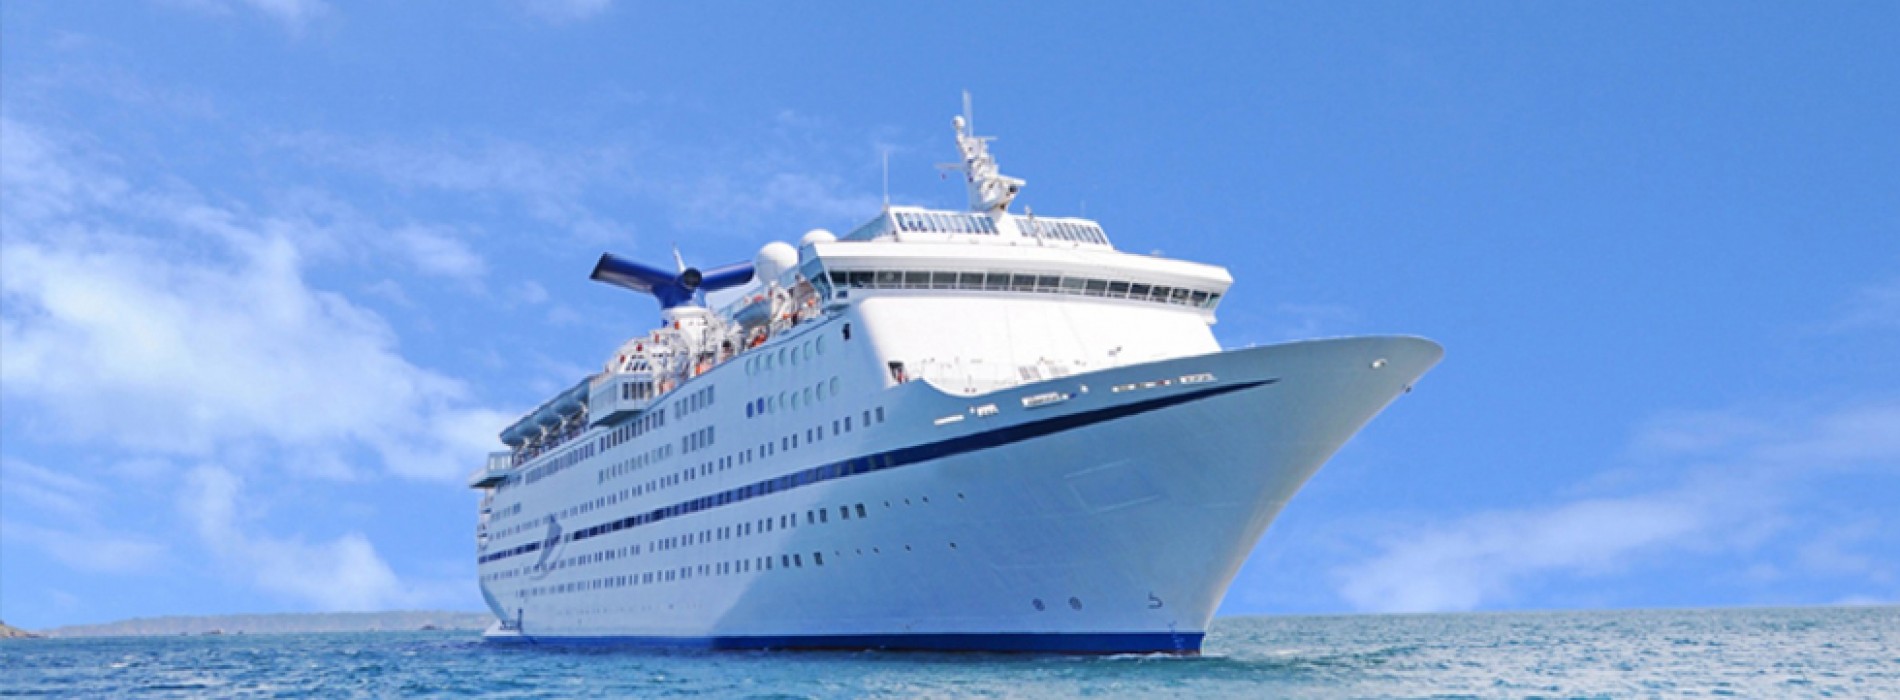 Mumbai cruise tourism set to get a major boost